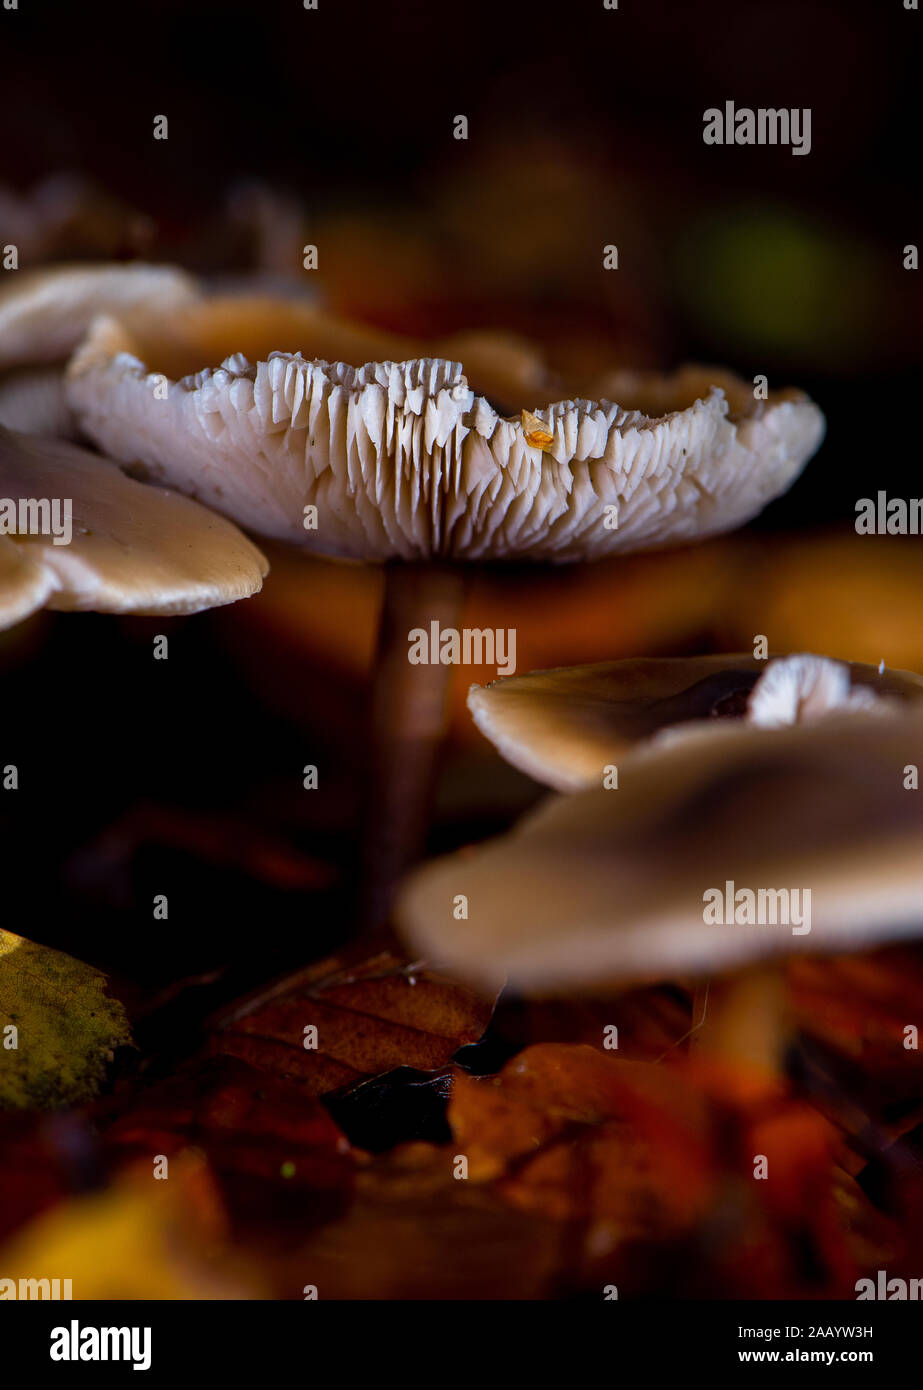 Die Butter Kappe, Rhodocollybia butyraceae Pilz unter den Herbst wachsenden Blätter innerhalb einer Gruppe Nahaufnahme makro- und beleuchtet mit Flash Einzelheiten anzeigen. Stockfoto